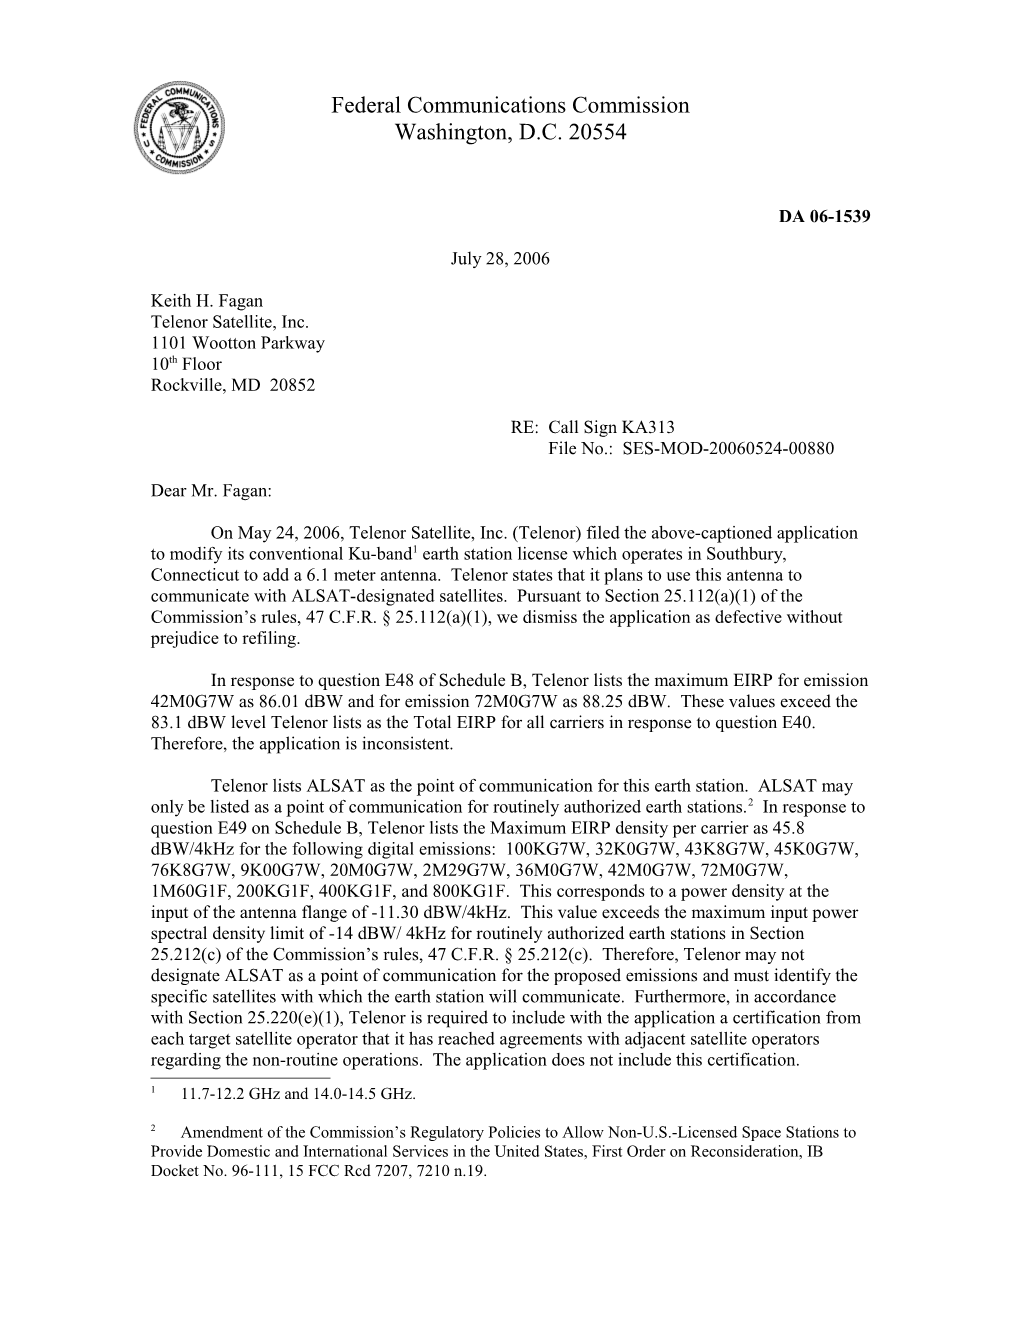 Federal Communications Commission DA 06-1539